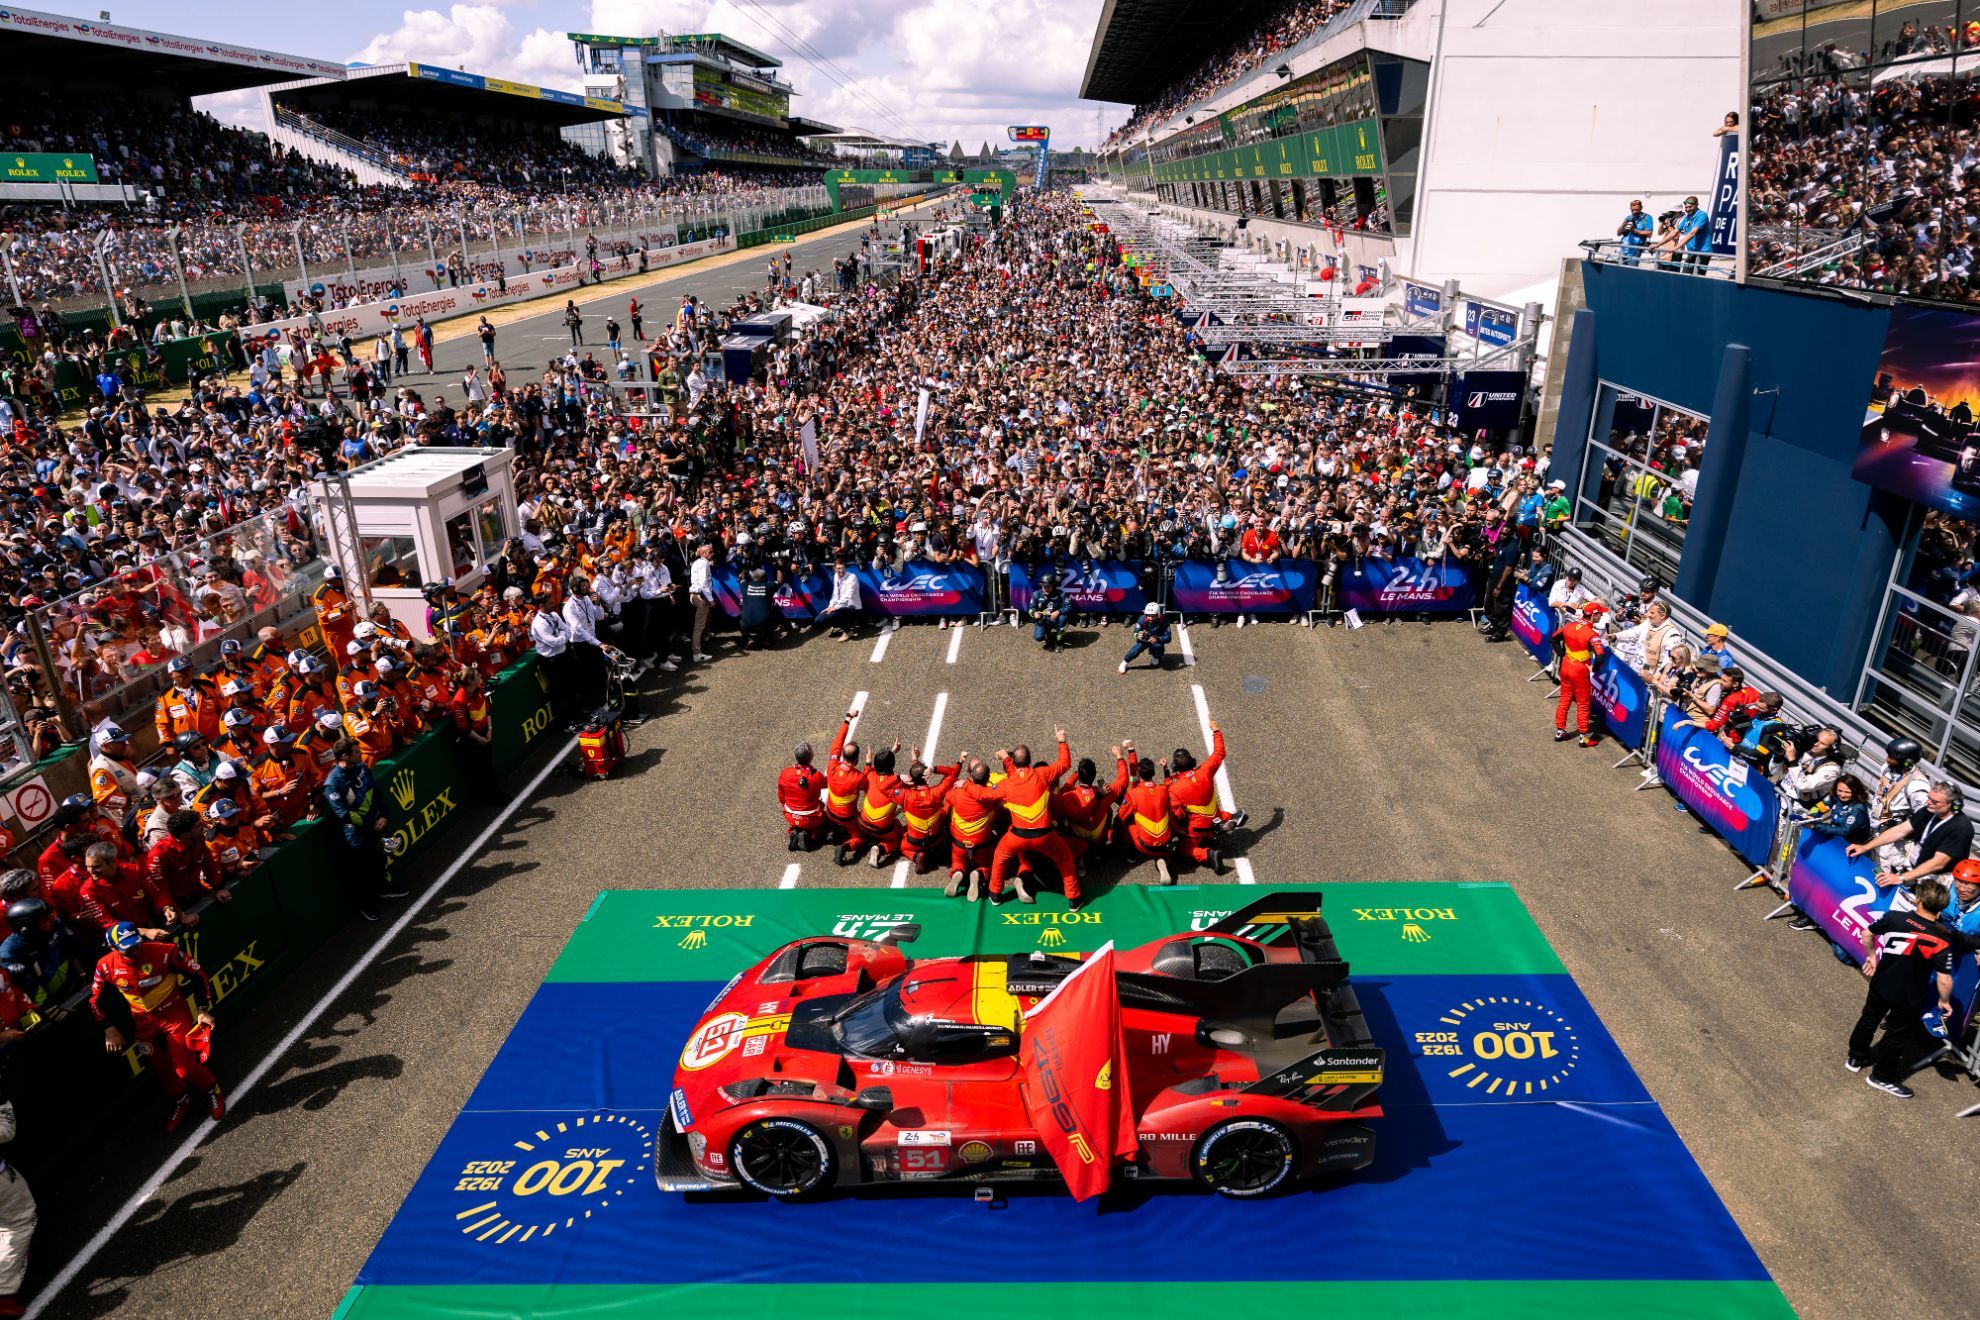 La espectacular imagen de los aledaos del podio tras la victoria de Ferrari.